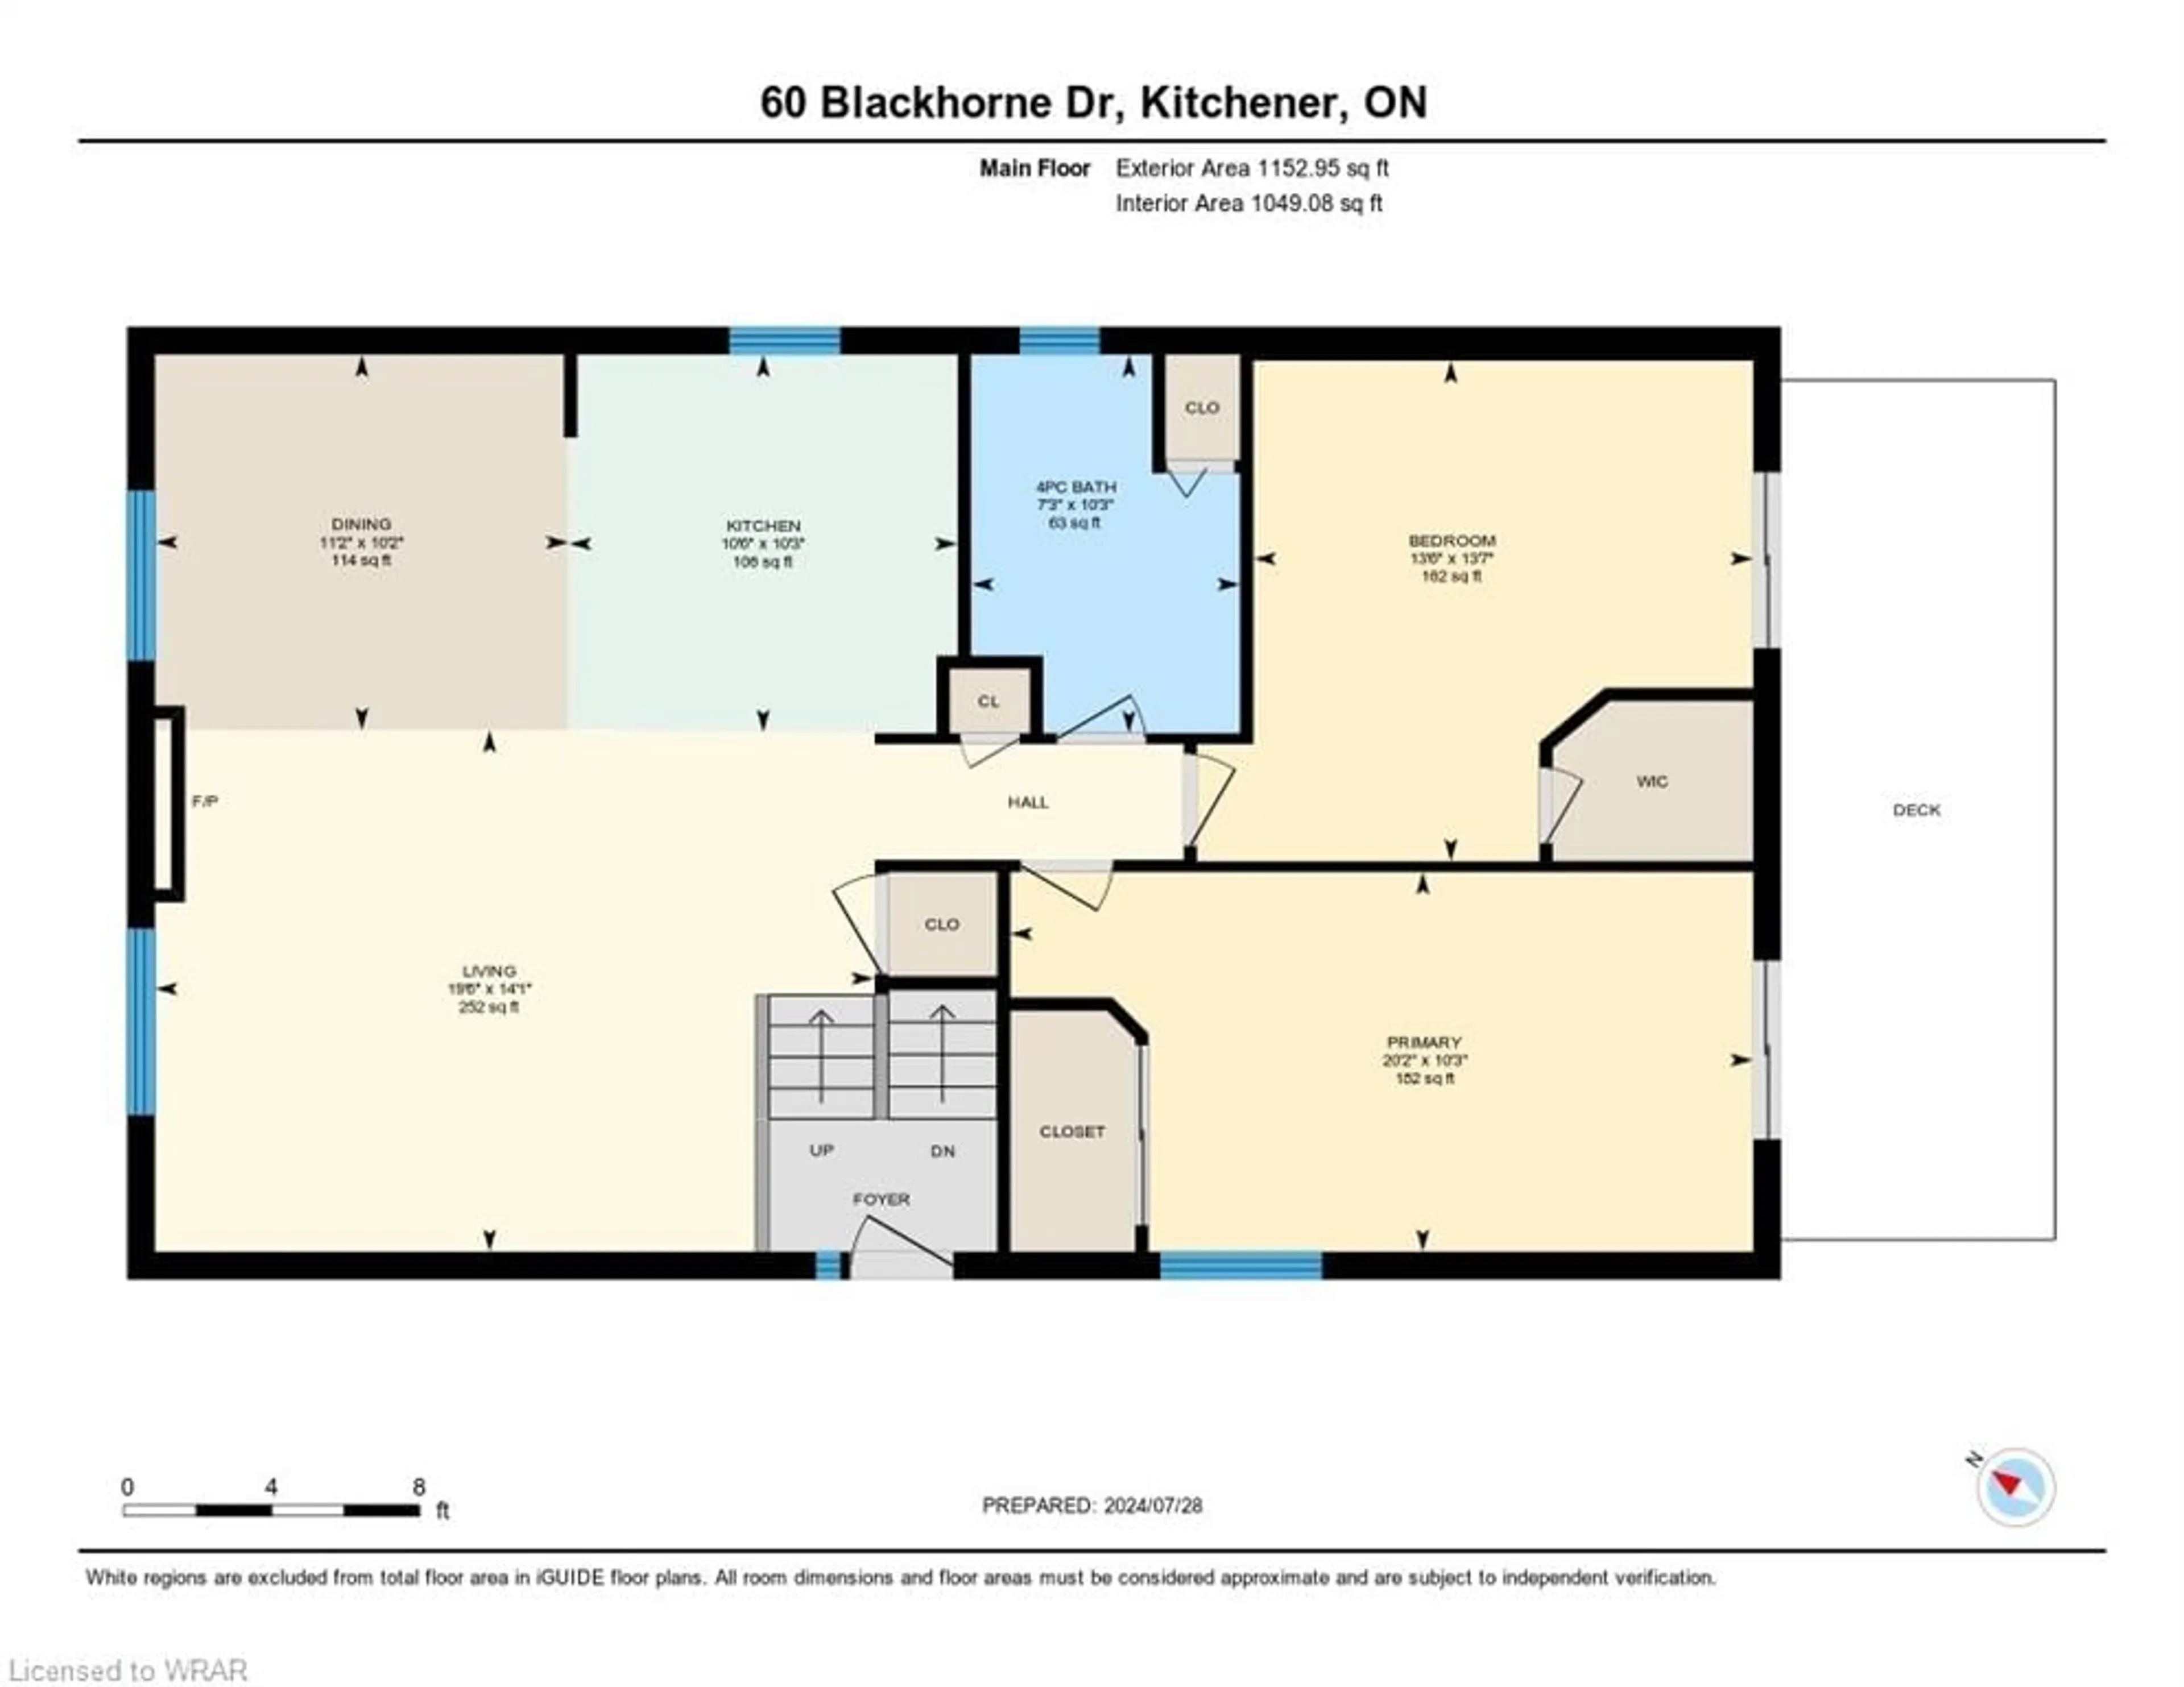 Floor plan for 60 Blackhorne Dr, Kitchener Ontario N2E 1T4